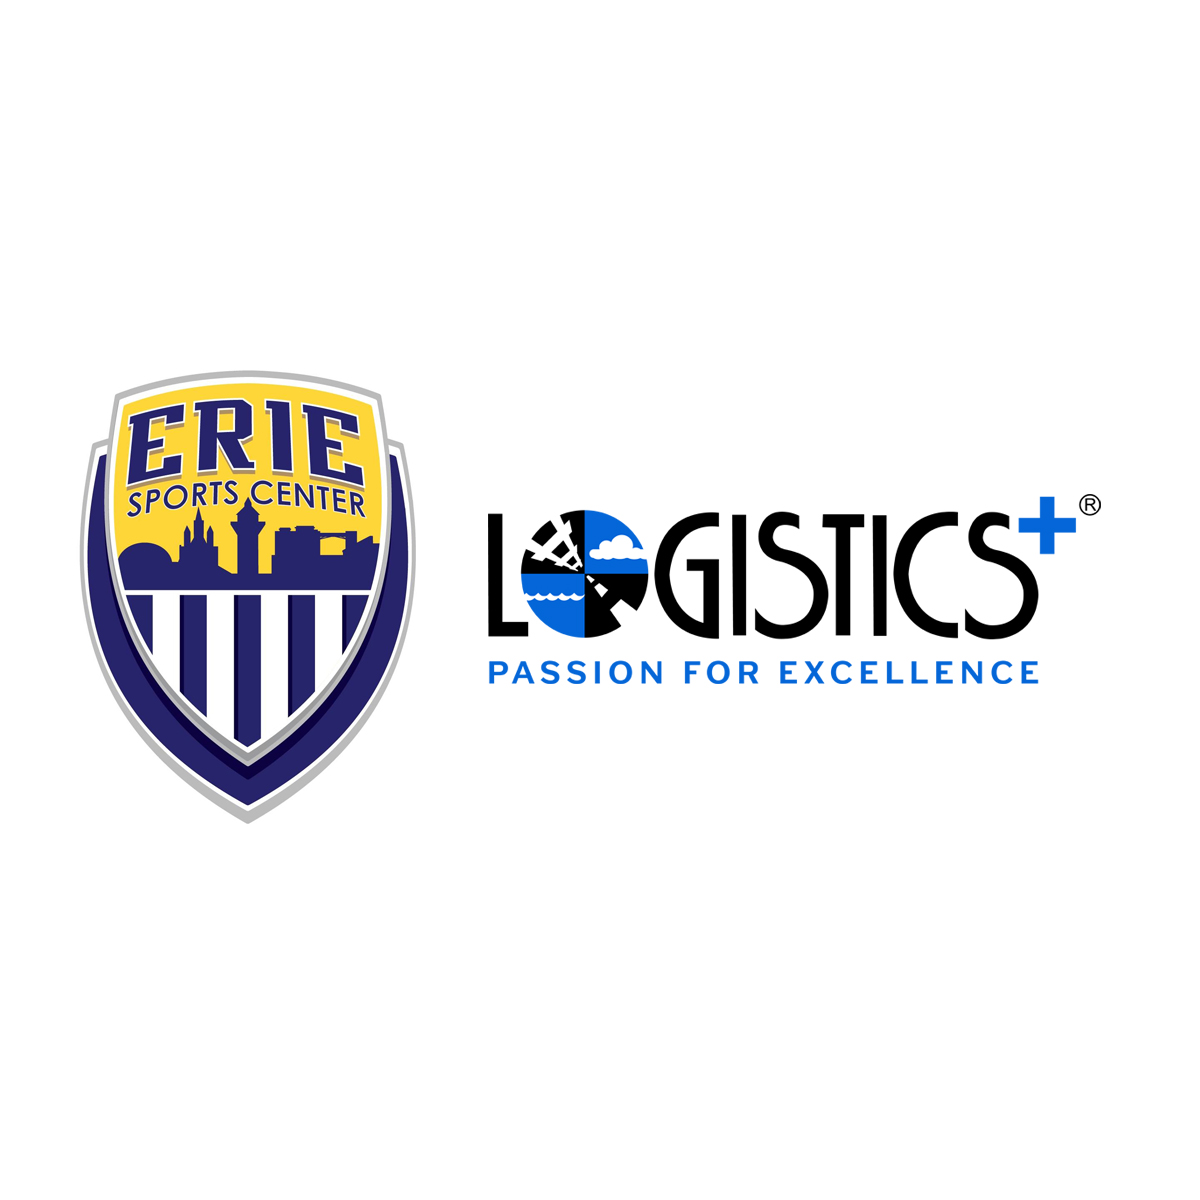 Erie Sports Center Announces Partnership with Logistics Plus